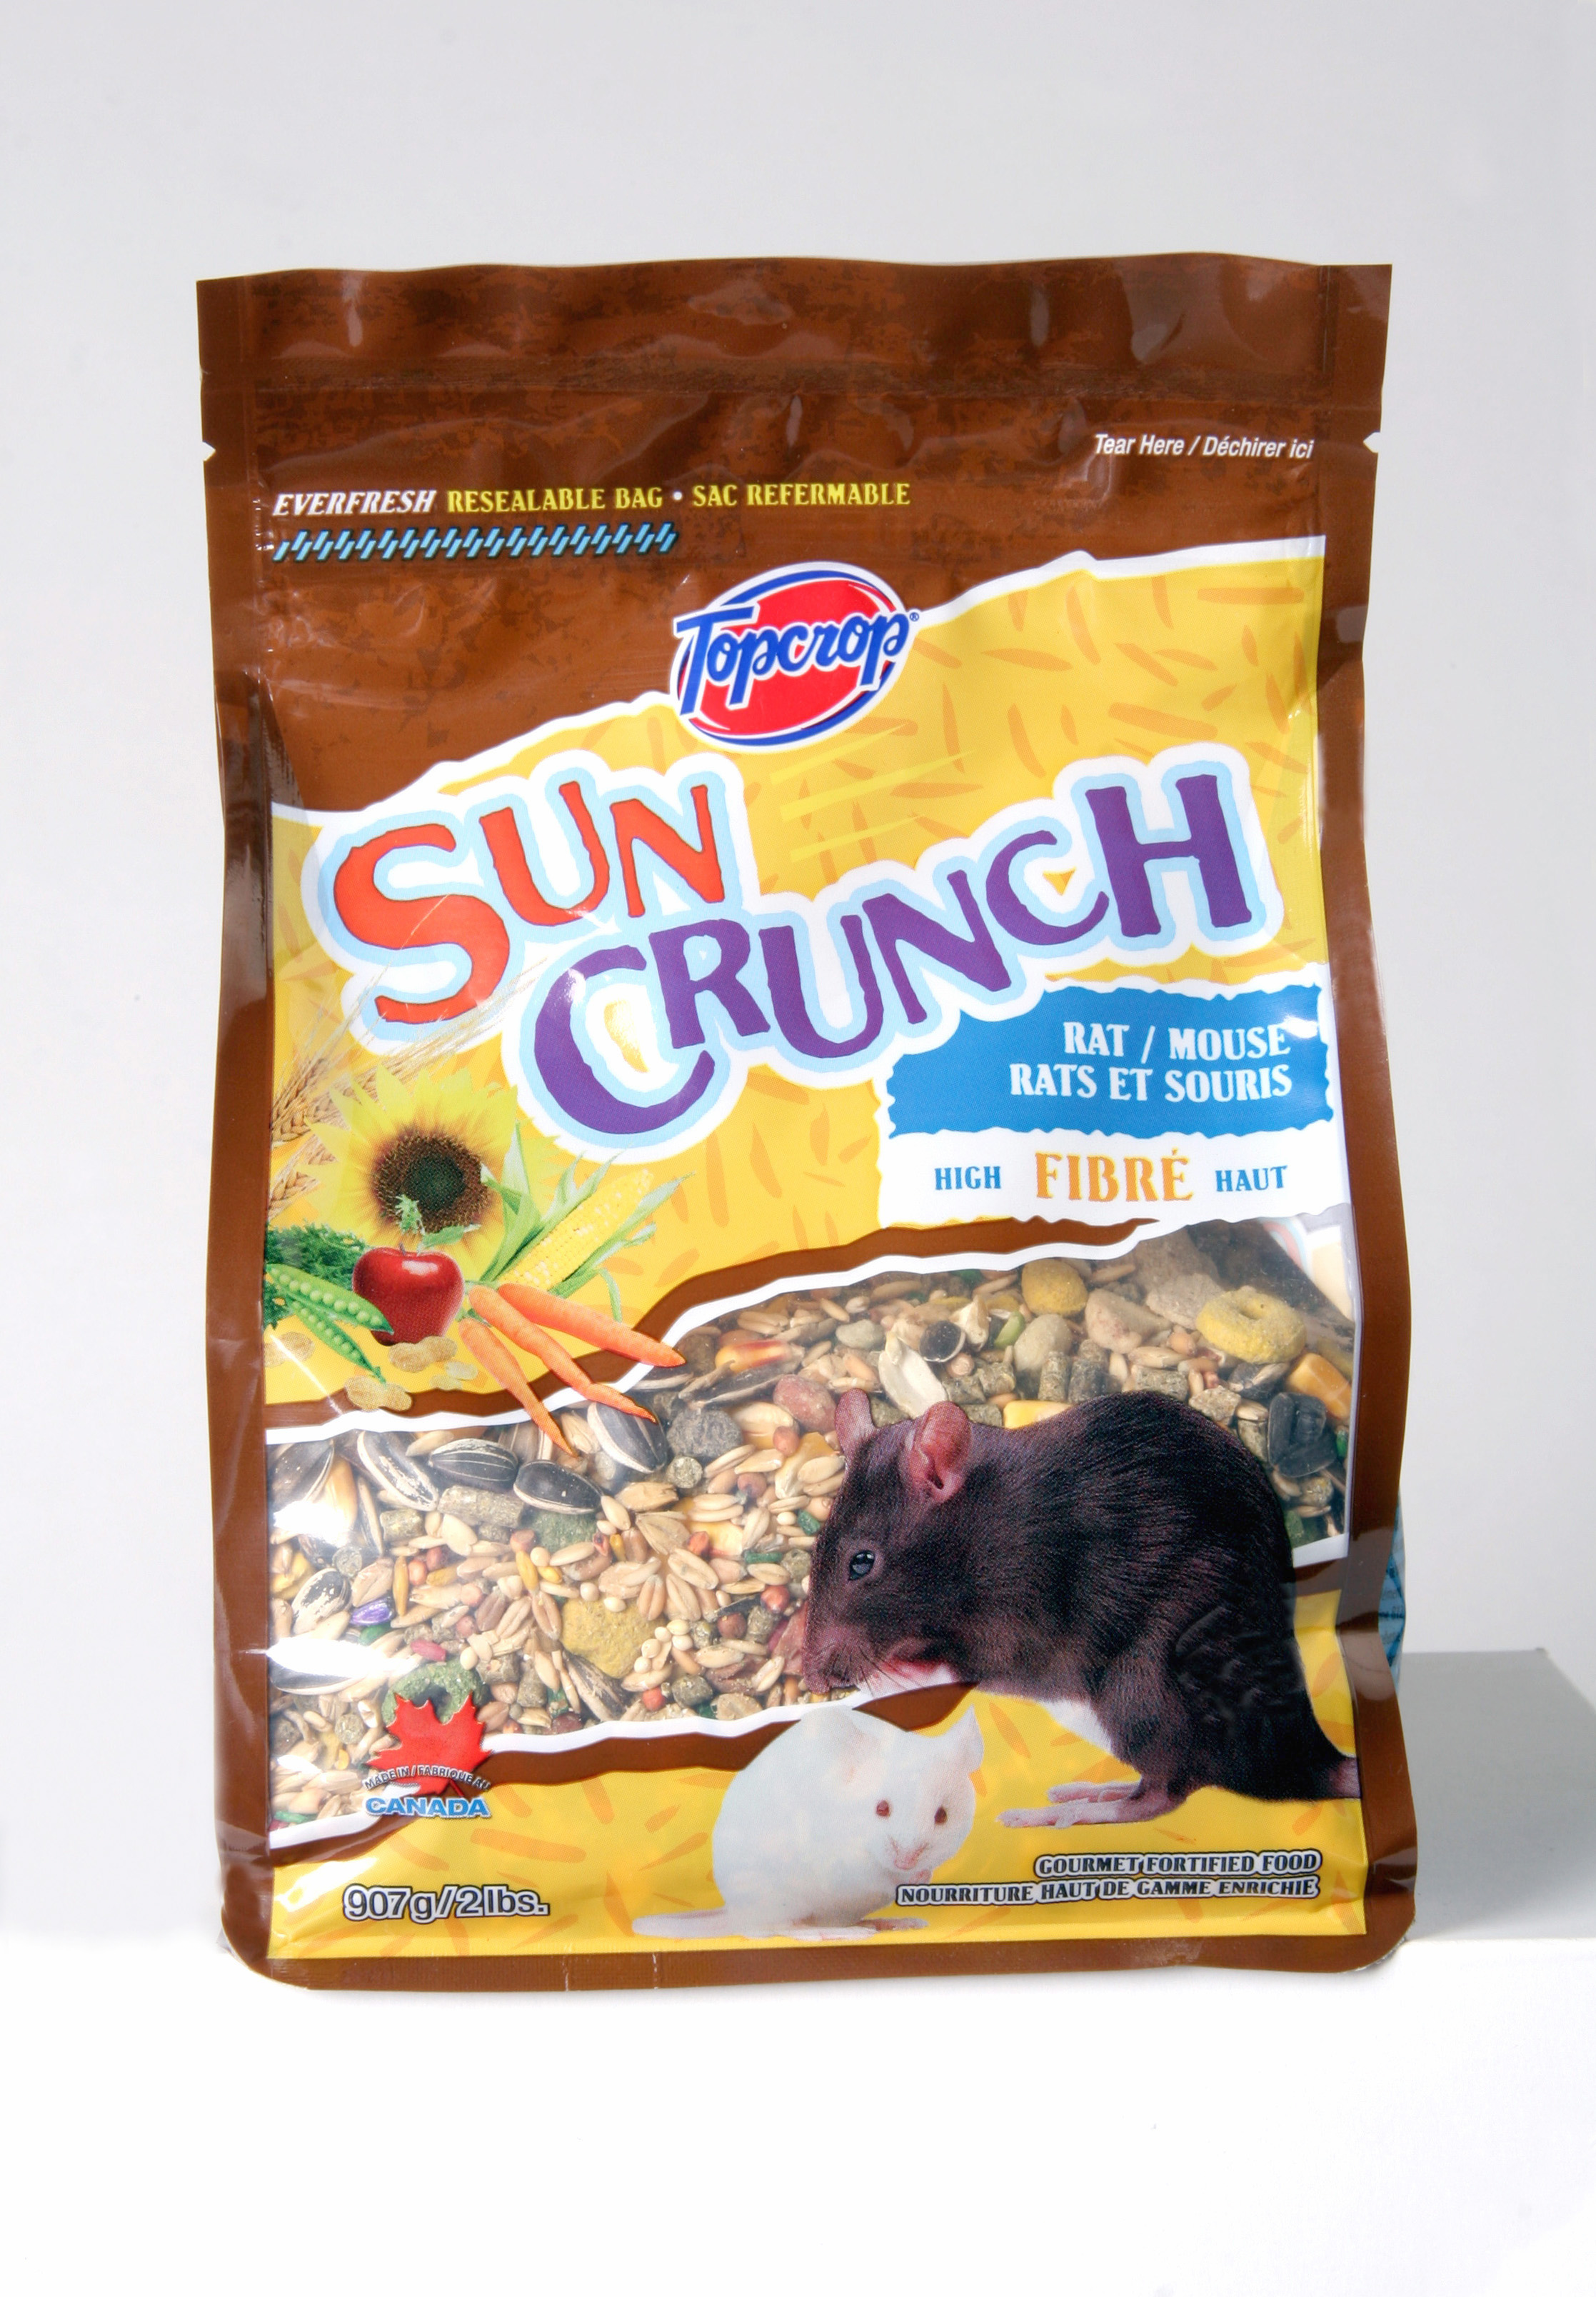 Suncrunch Rat & Mouse